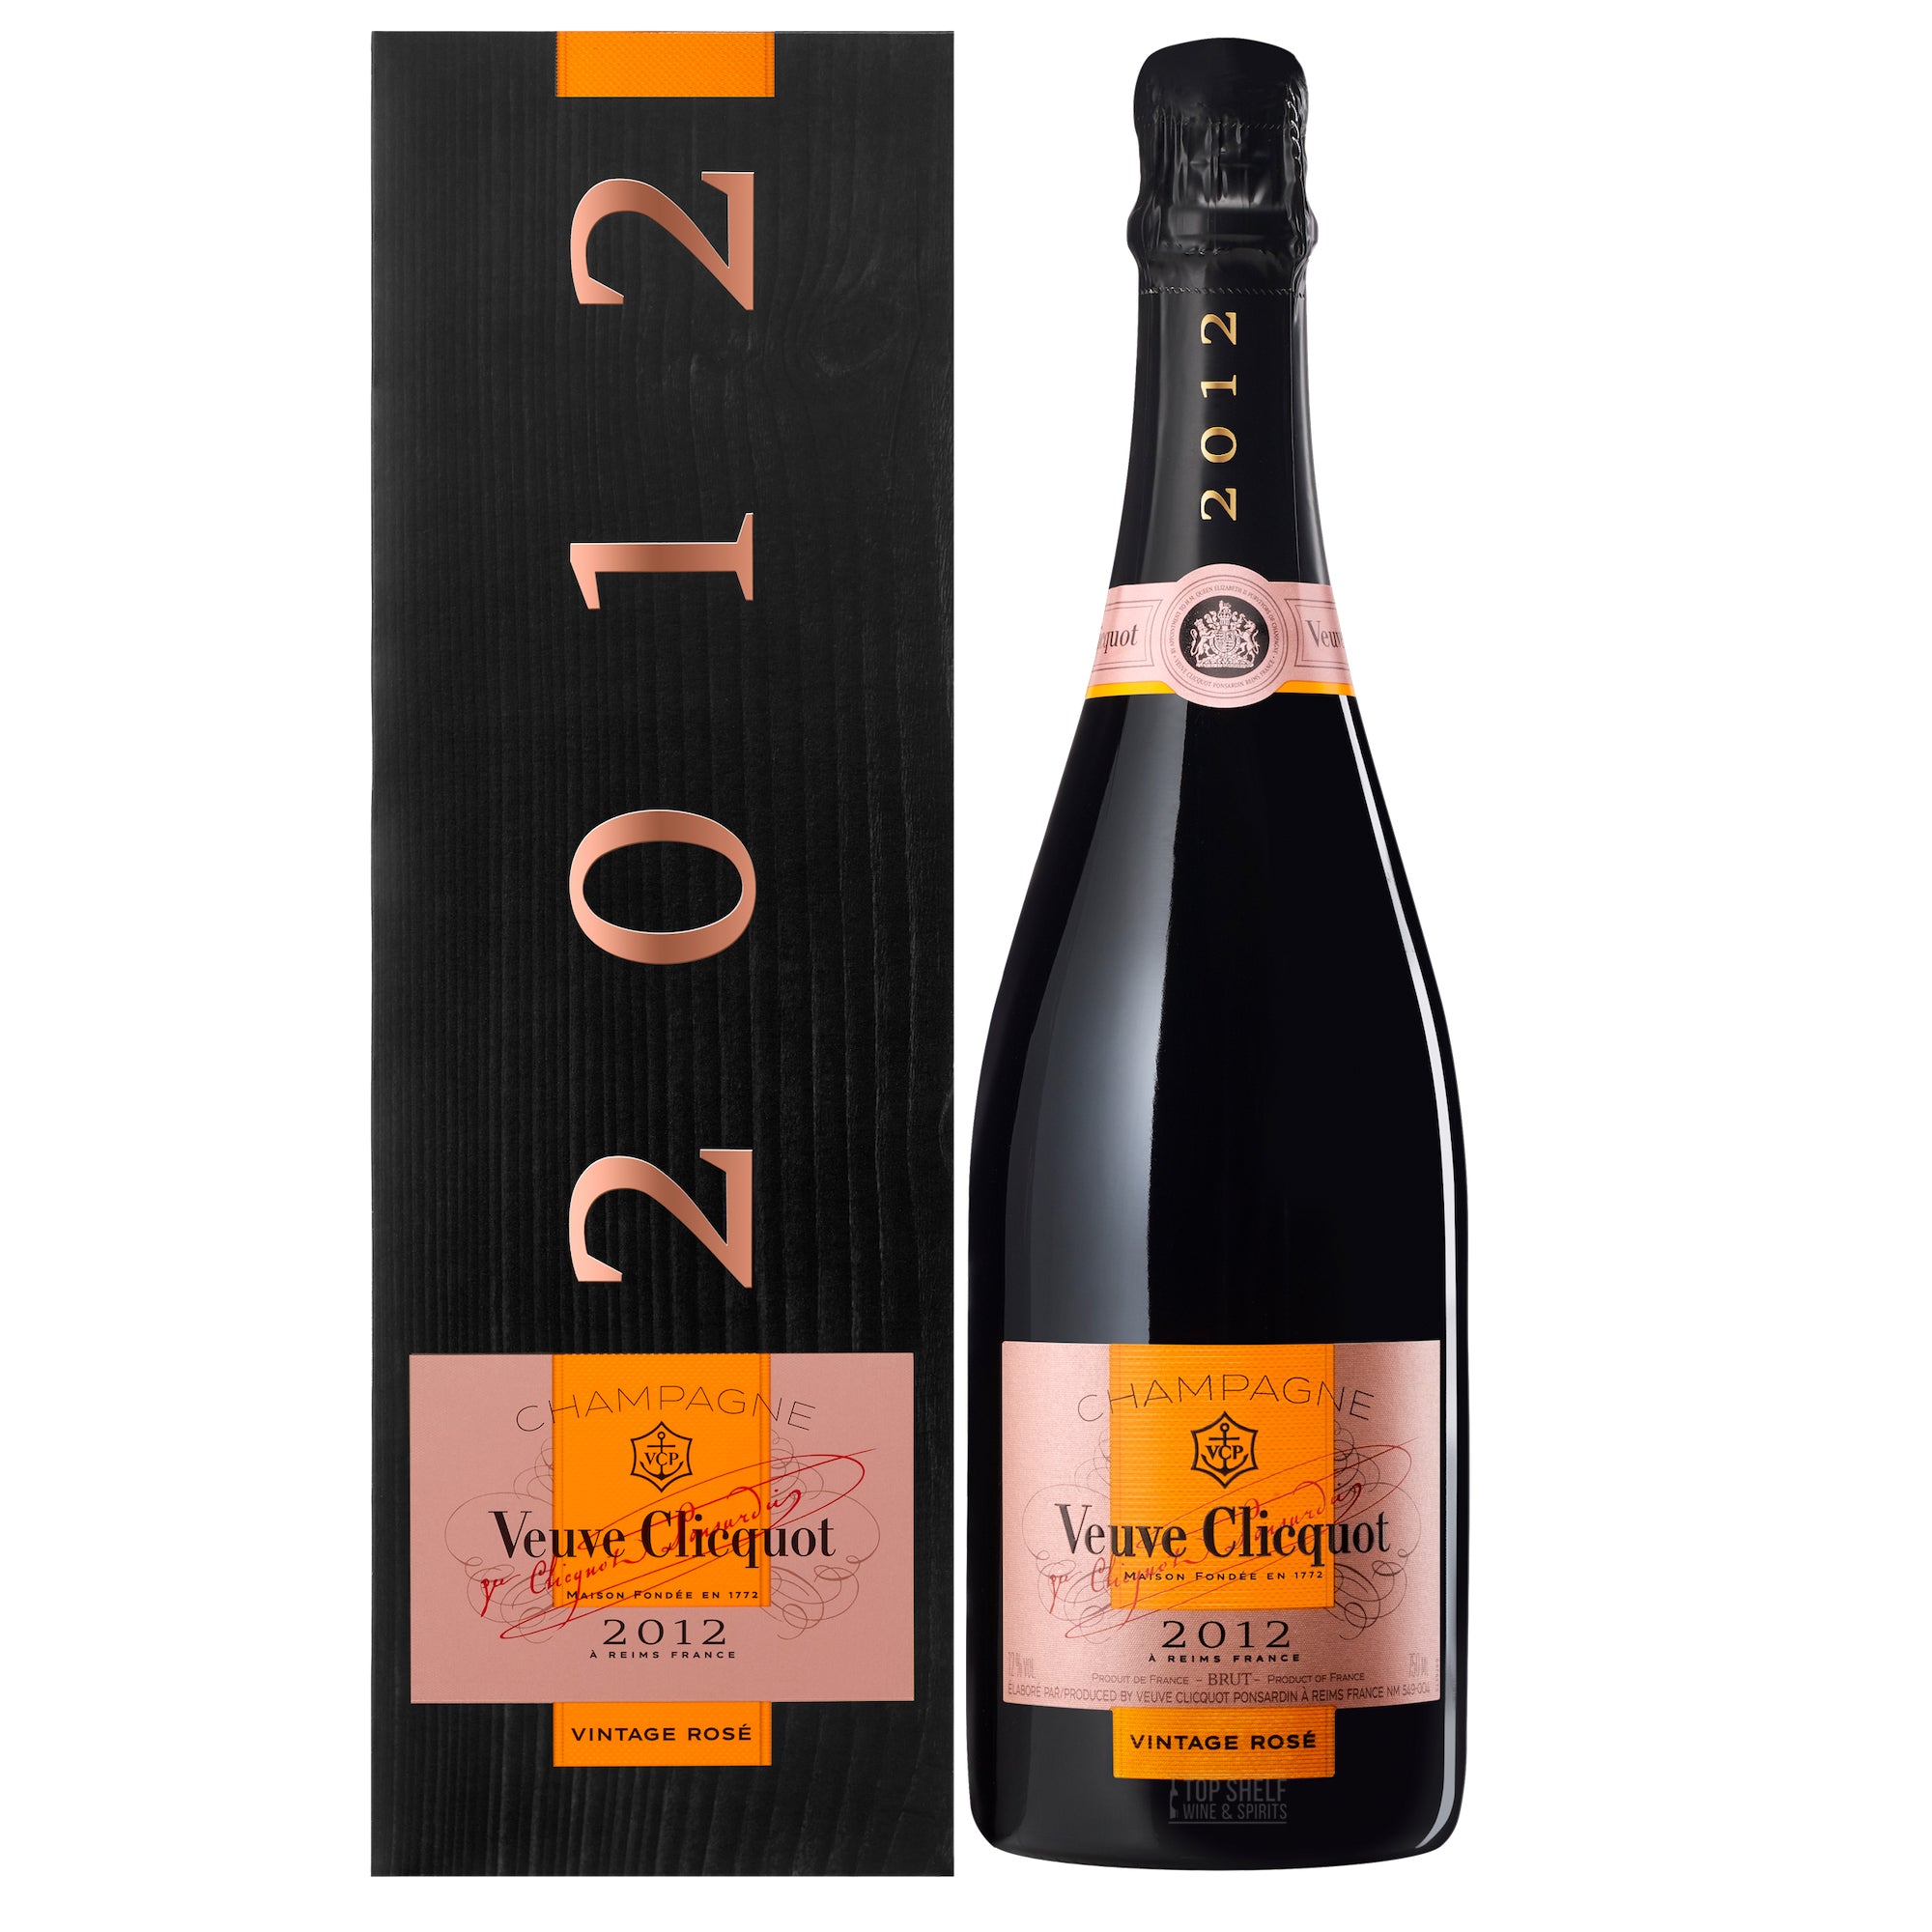 Buy Veuve Clicquot Rosé SMEG Fridge Champagne